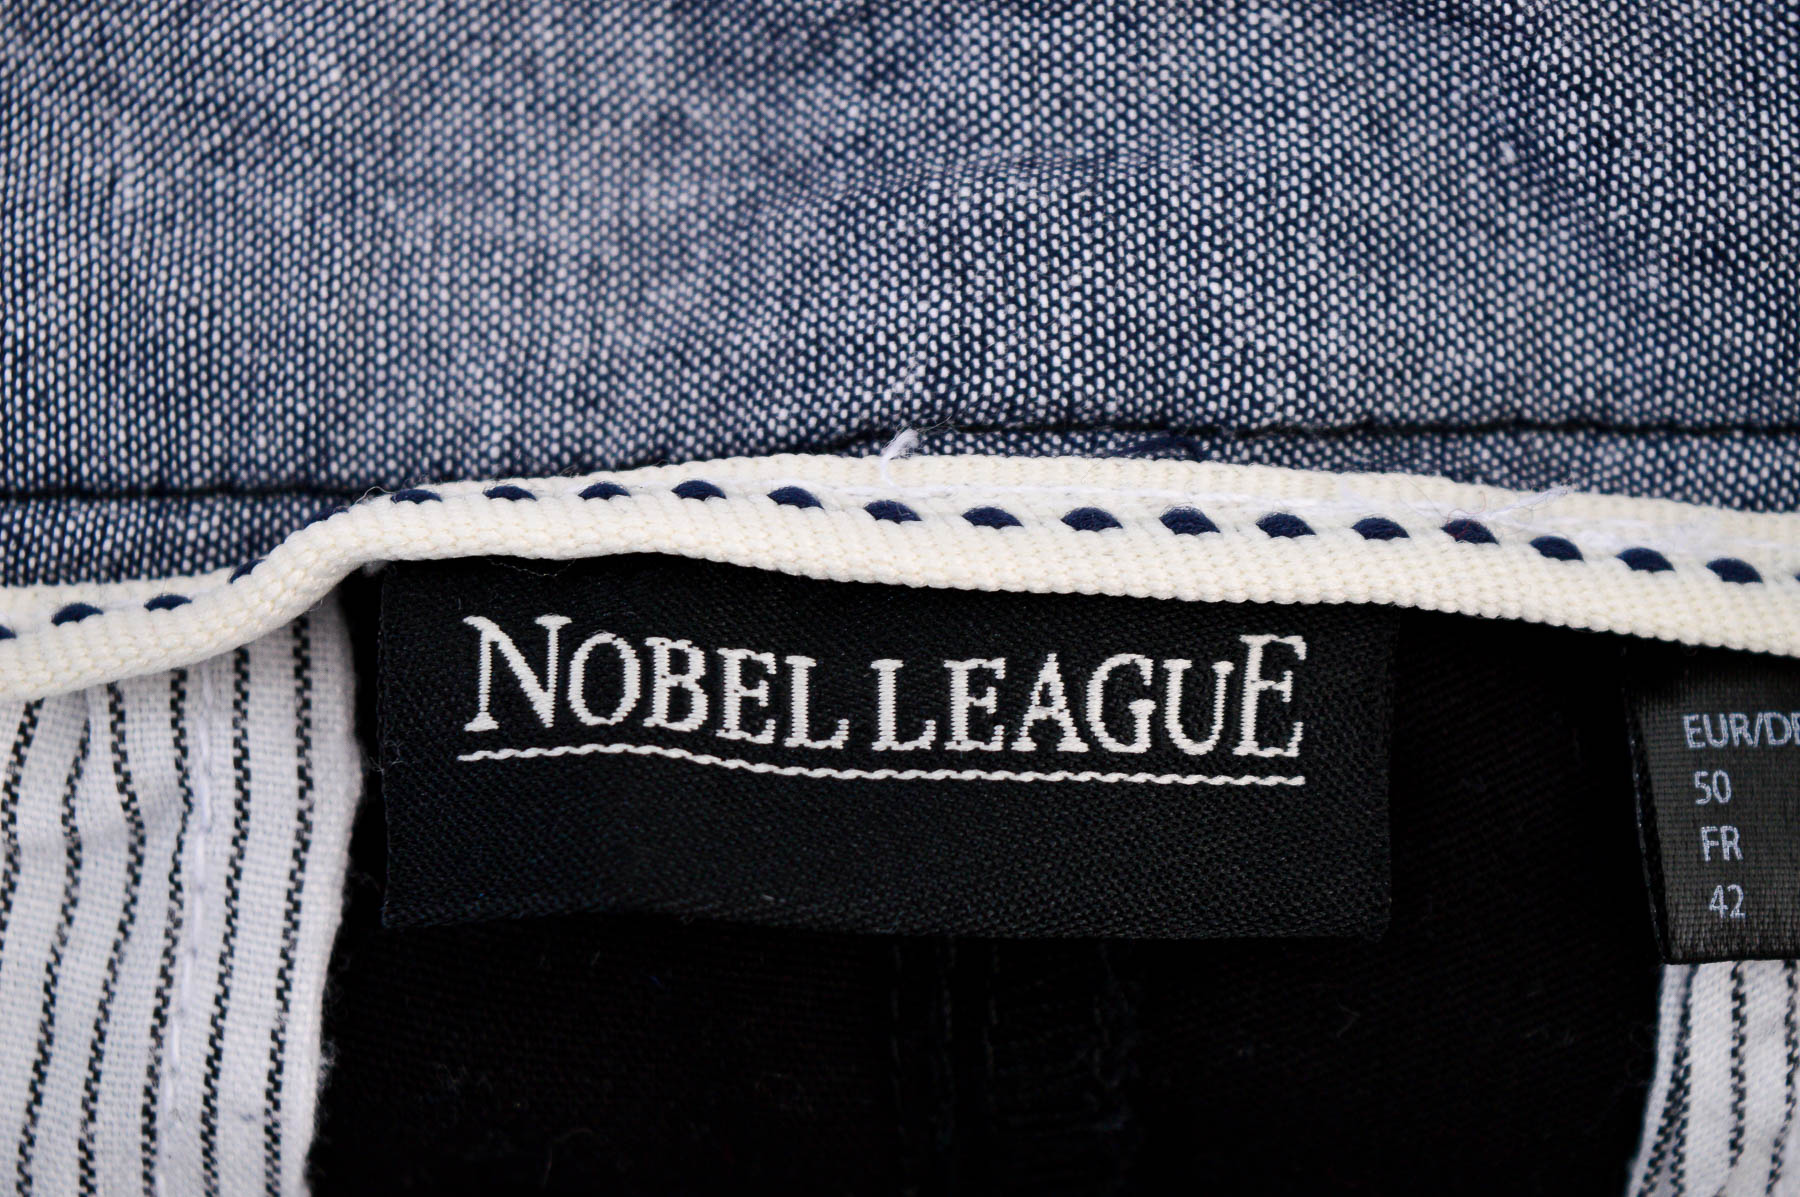 Men's trousers - Nobel League - 2